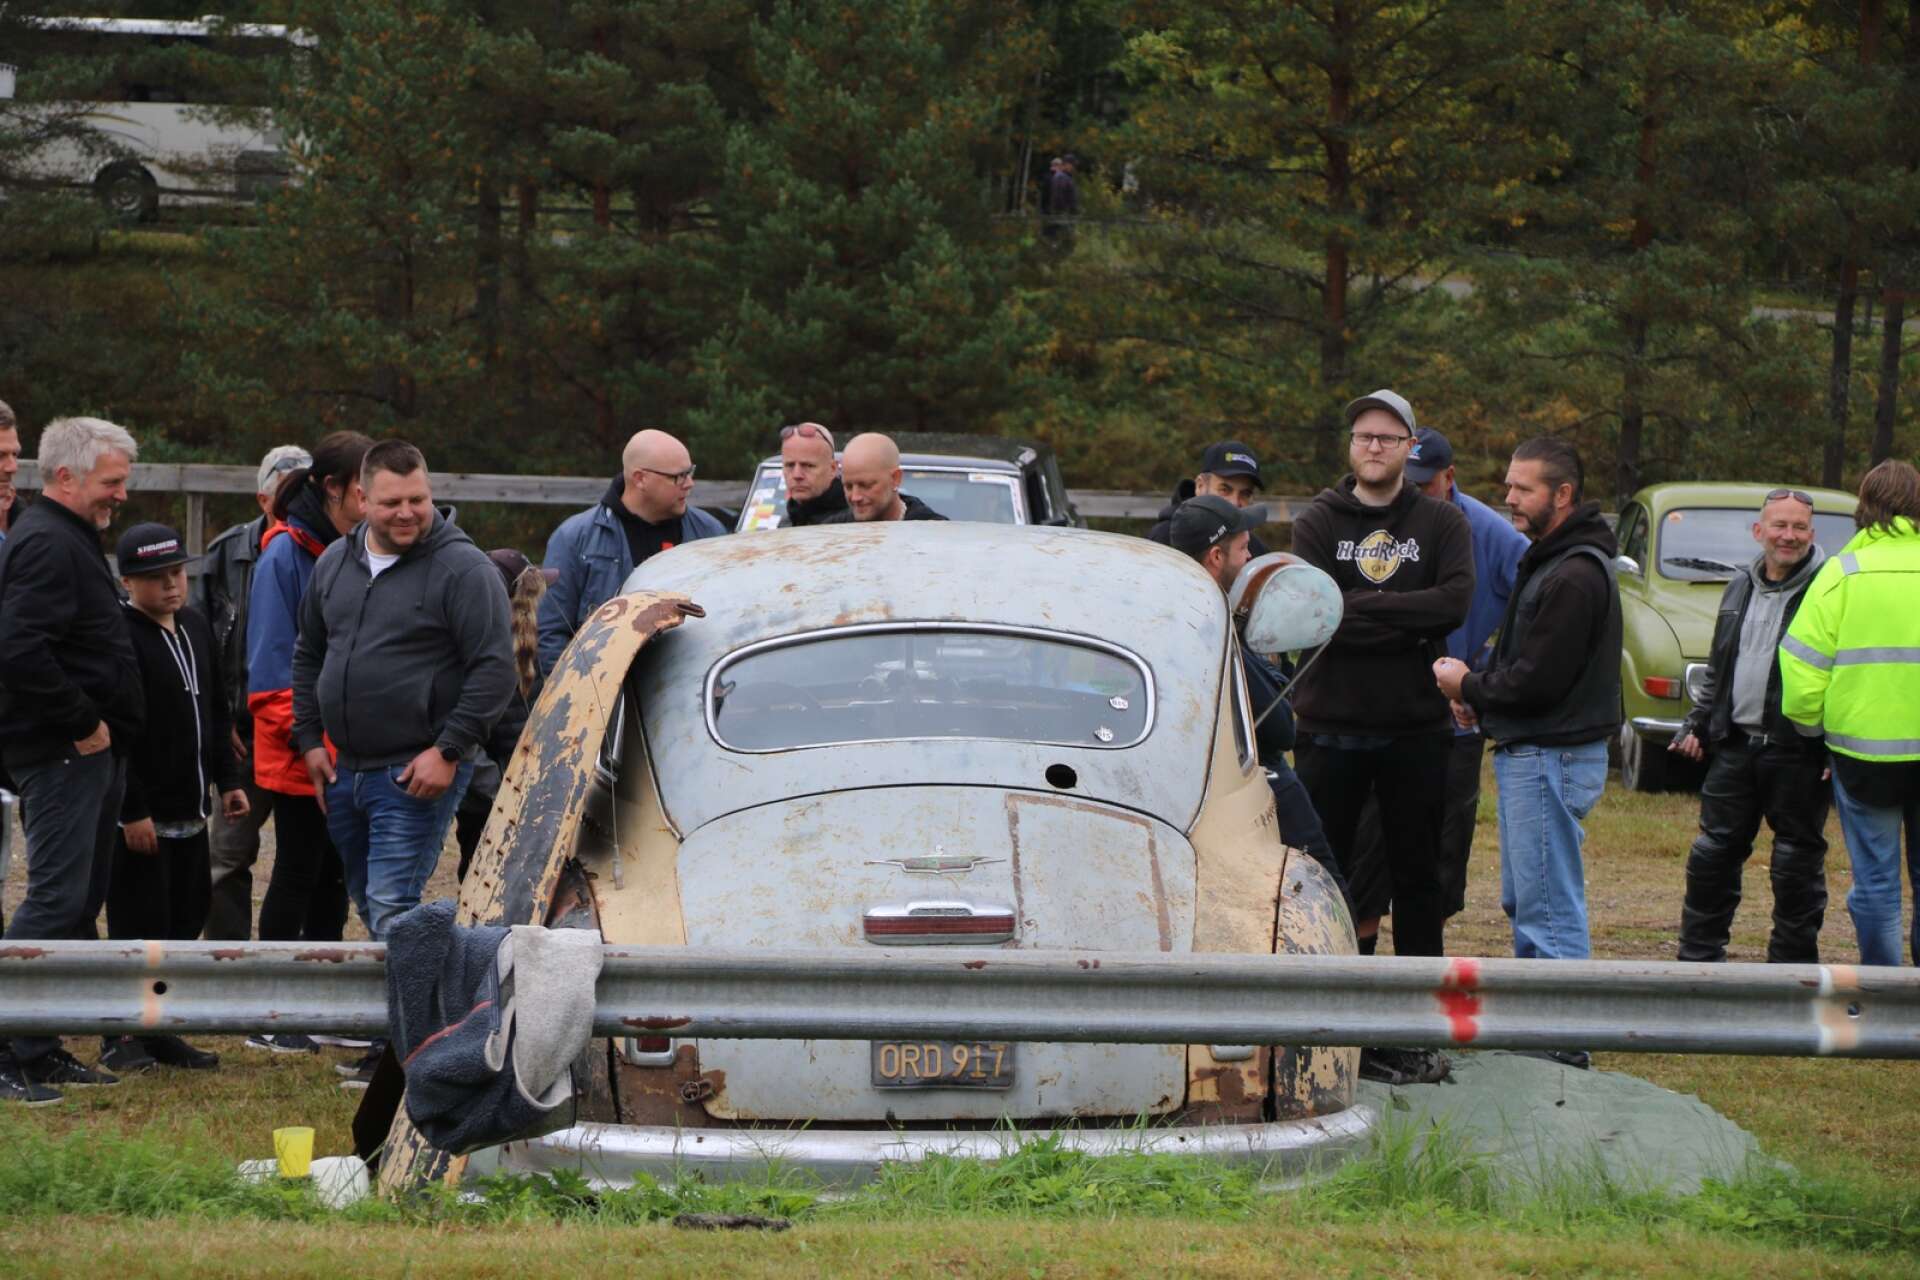 Föreningen Hjulhälja arrangerade sin uppskattade veteranfordonstävling Hot rod rumble på Flottuvan i Filipstad.